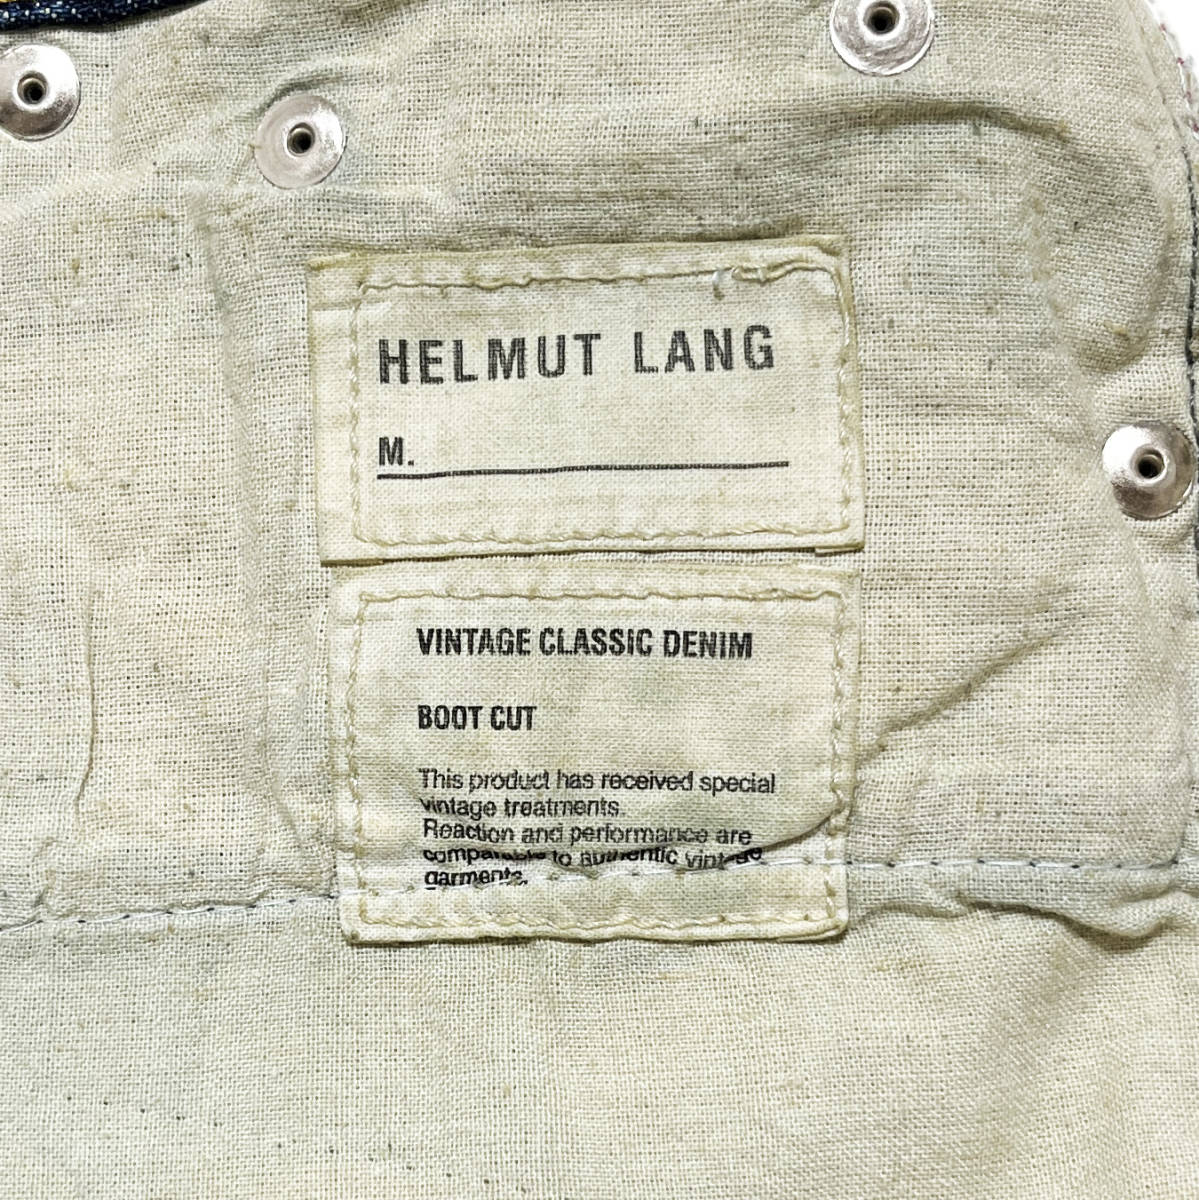  неиспользуемый товар HELMUT LANG VINTAGE CLASSIC DENIM Италия производства Denim джинсы 27 Helmut Lang сам период брюки MARTIN MARGIELA APC PRADA